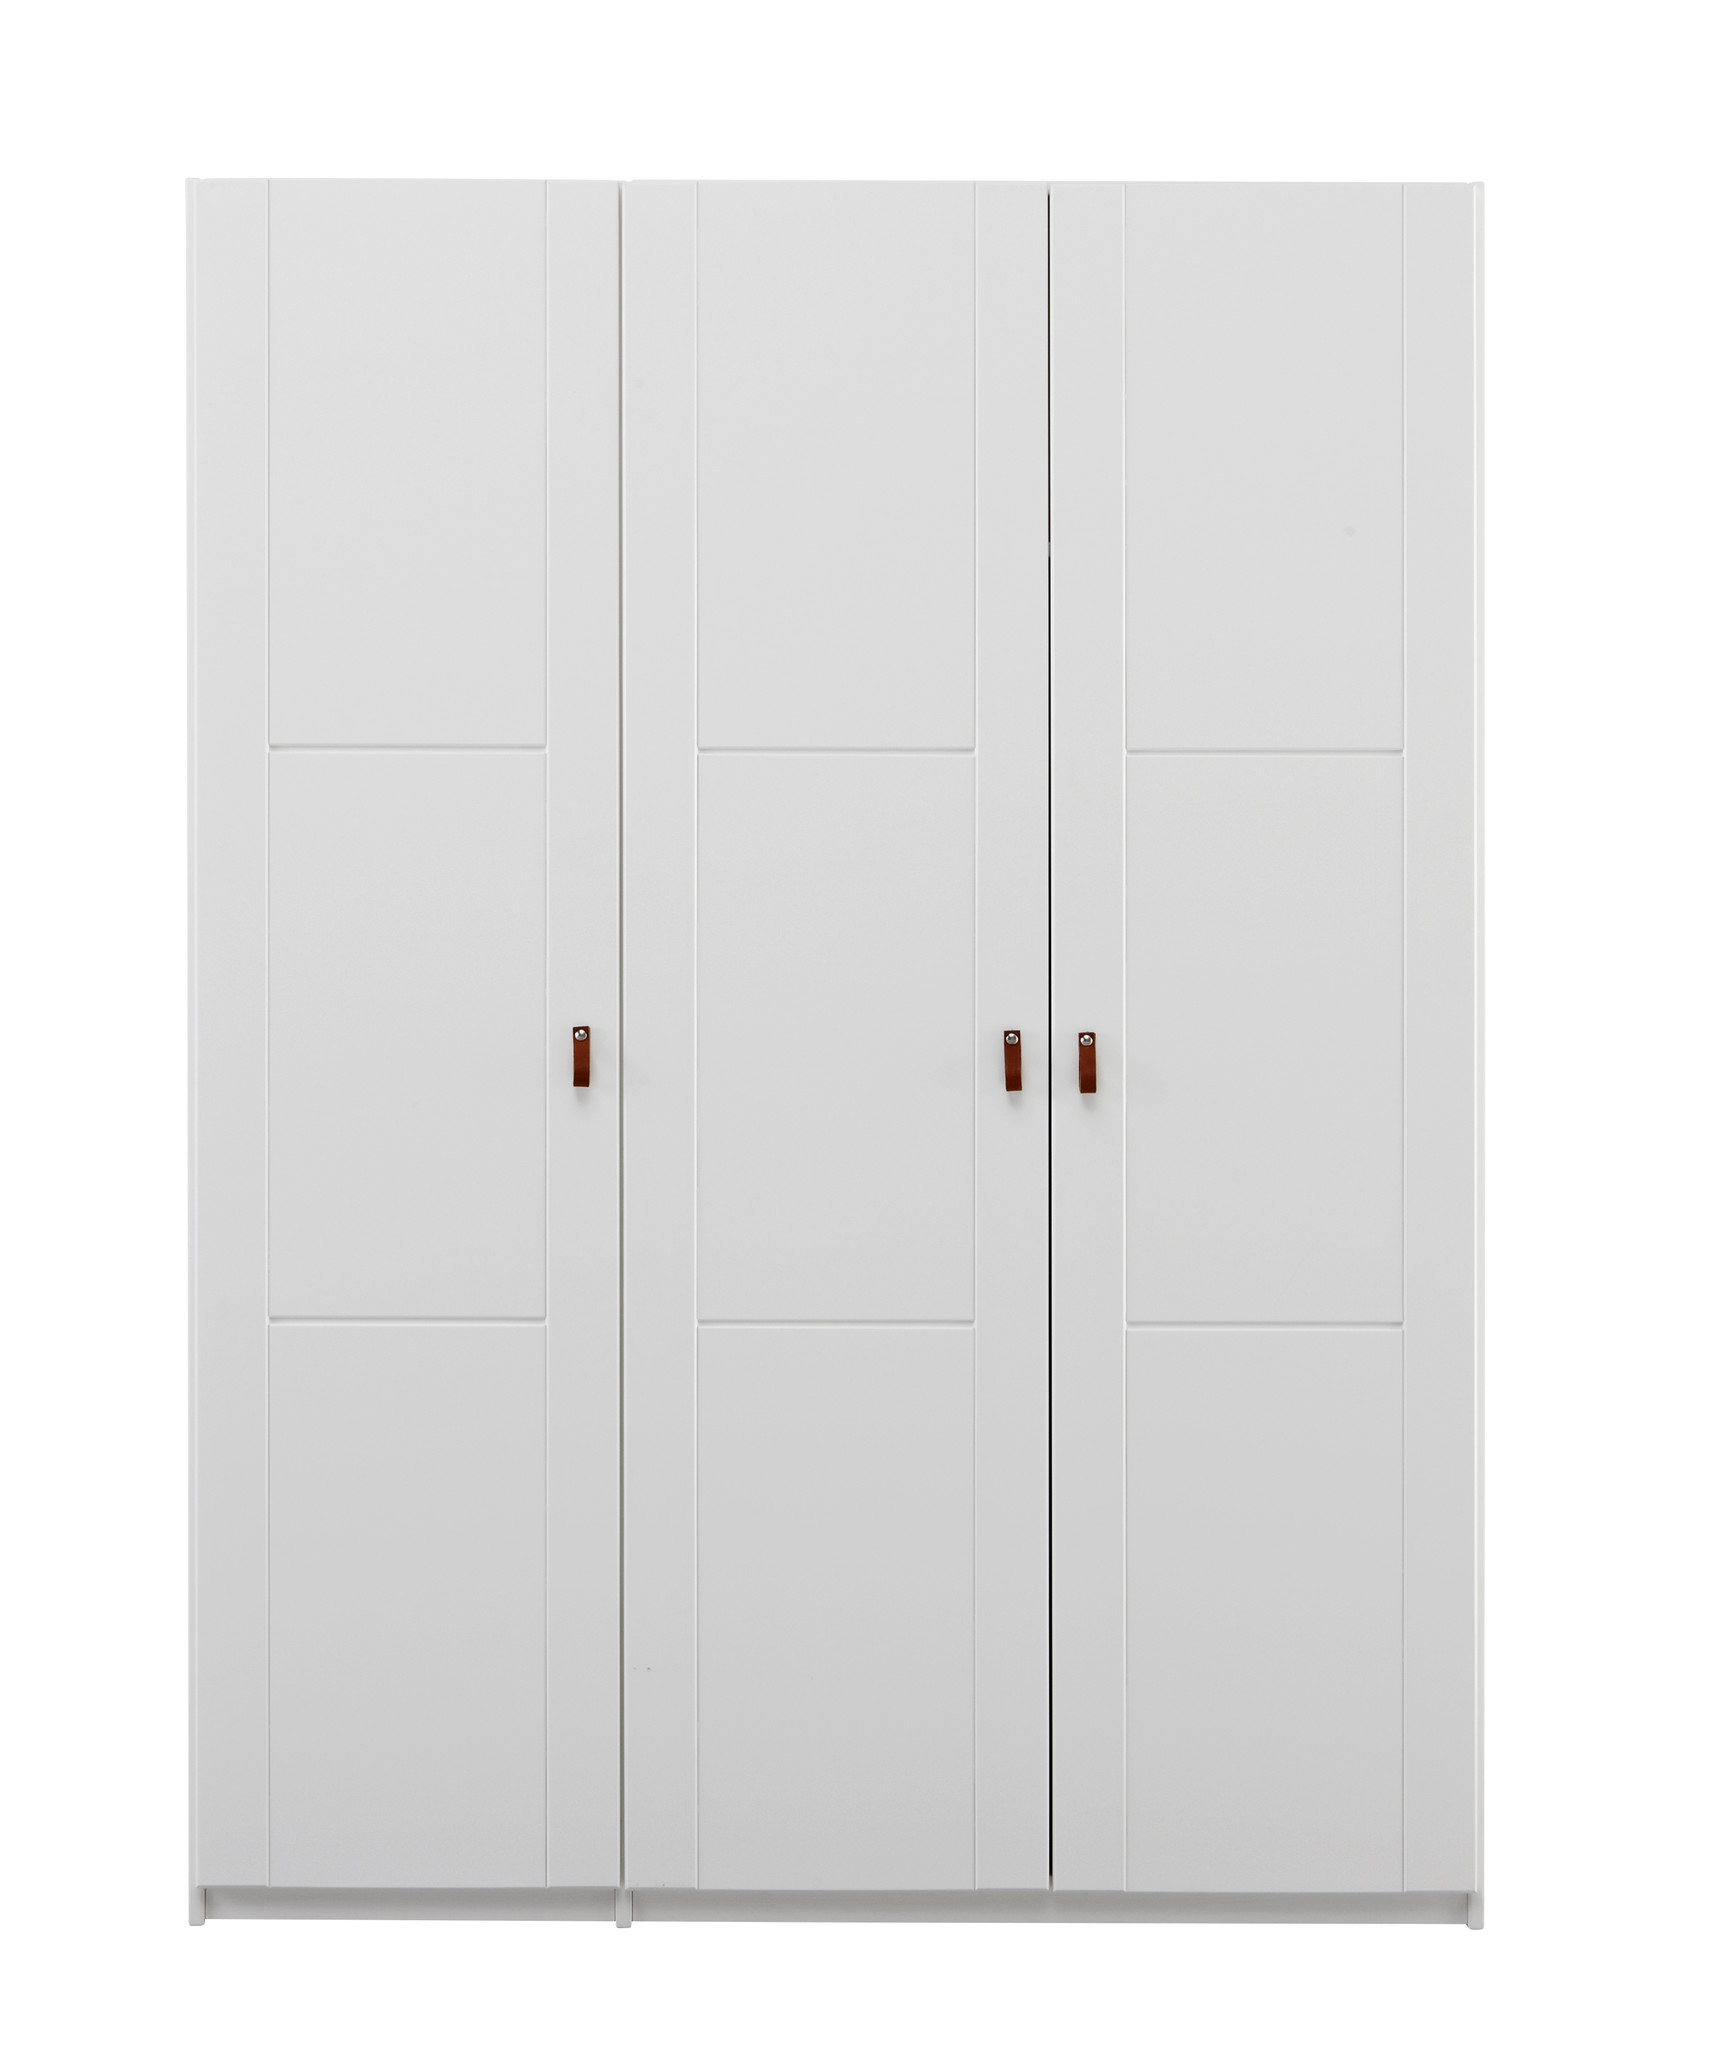 Kleiderschrank 150 cm mit 3 Türen in whitewash - ROMY Kindermöbel